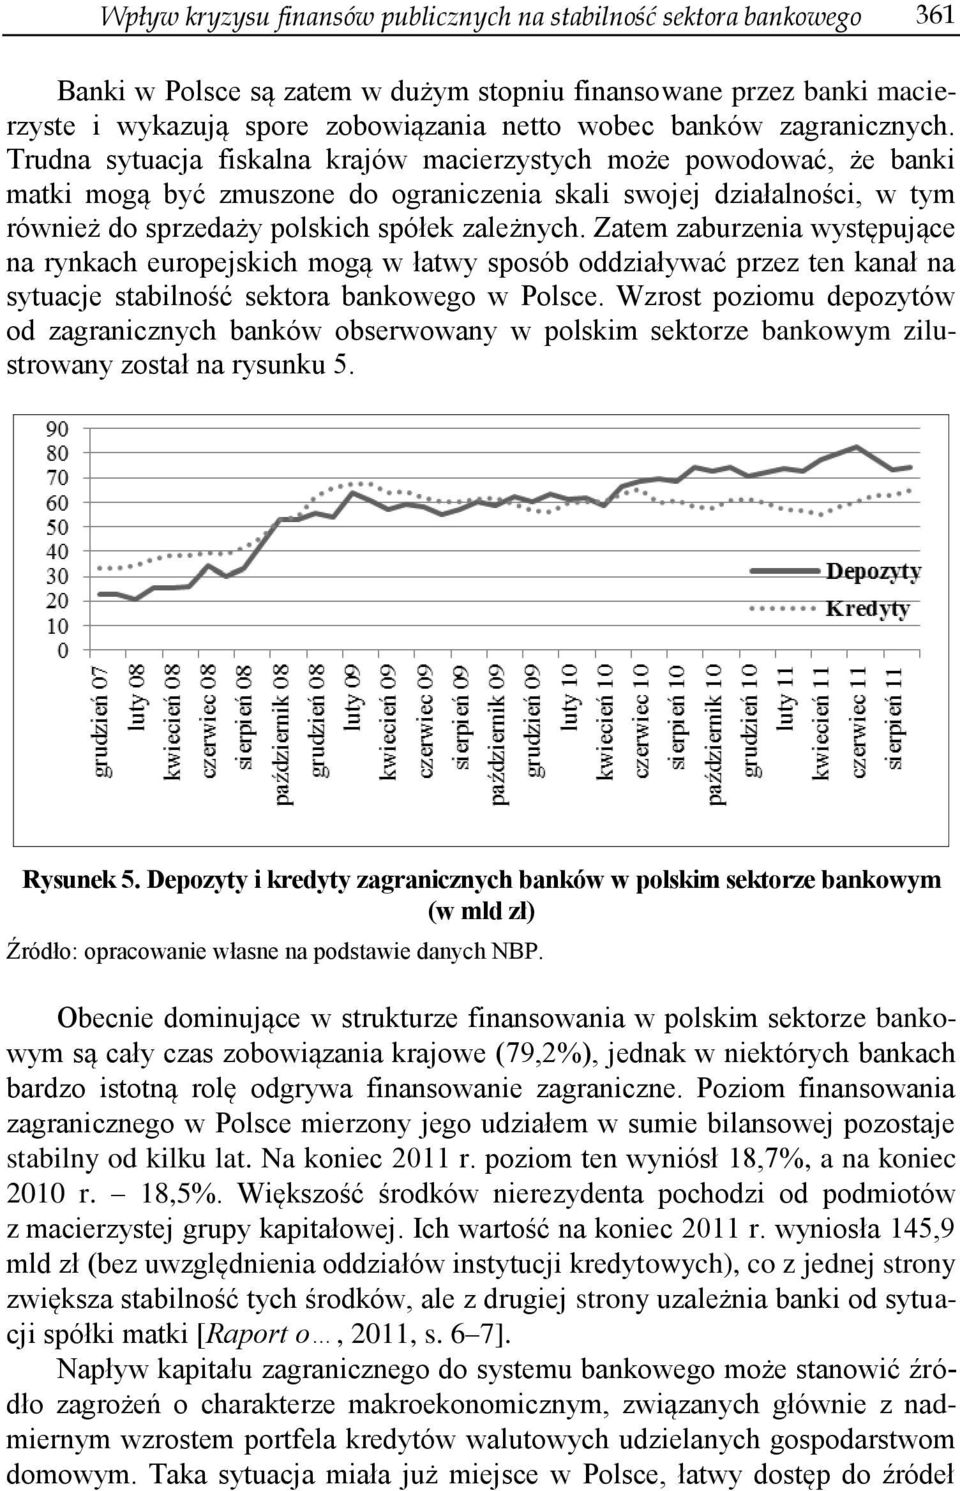 Trudna sytuacja fiskalna krajów macierzystych może powodować, że banki matki mogą być zmuszone do ograniczenia skali swojej działalności, w tym również do sprzedaży polskich spółek zależnych.